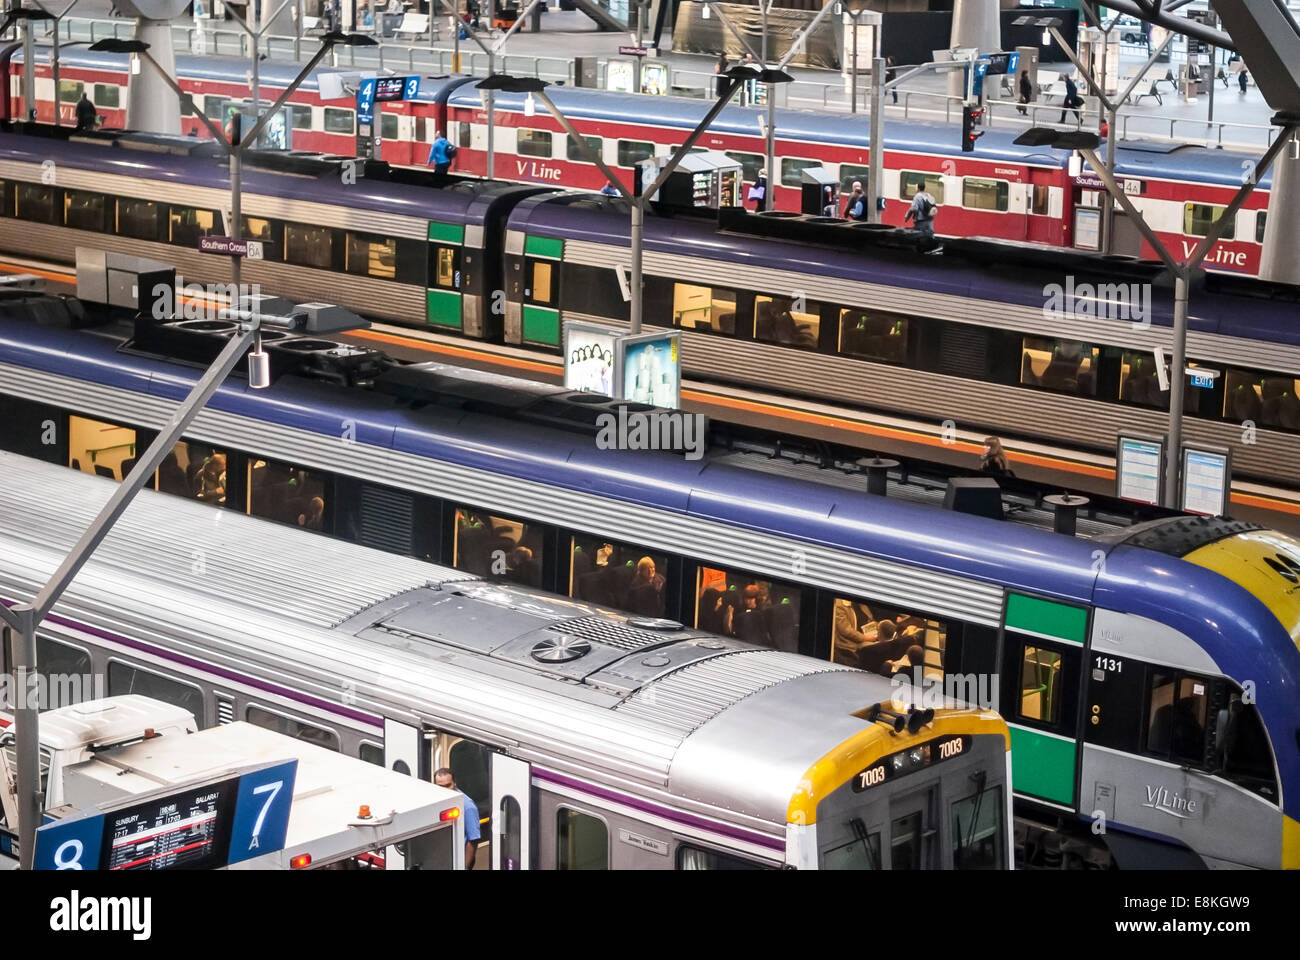 Carrozze ferroviarie si ferma a Melbourne la Croce del Sud stazione ferroviaria in Australia. Foto Stock